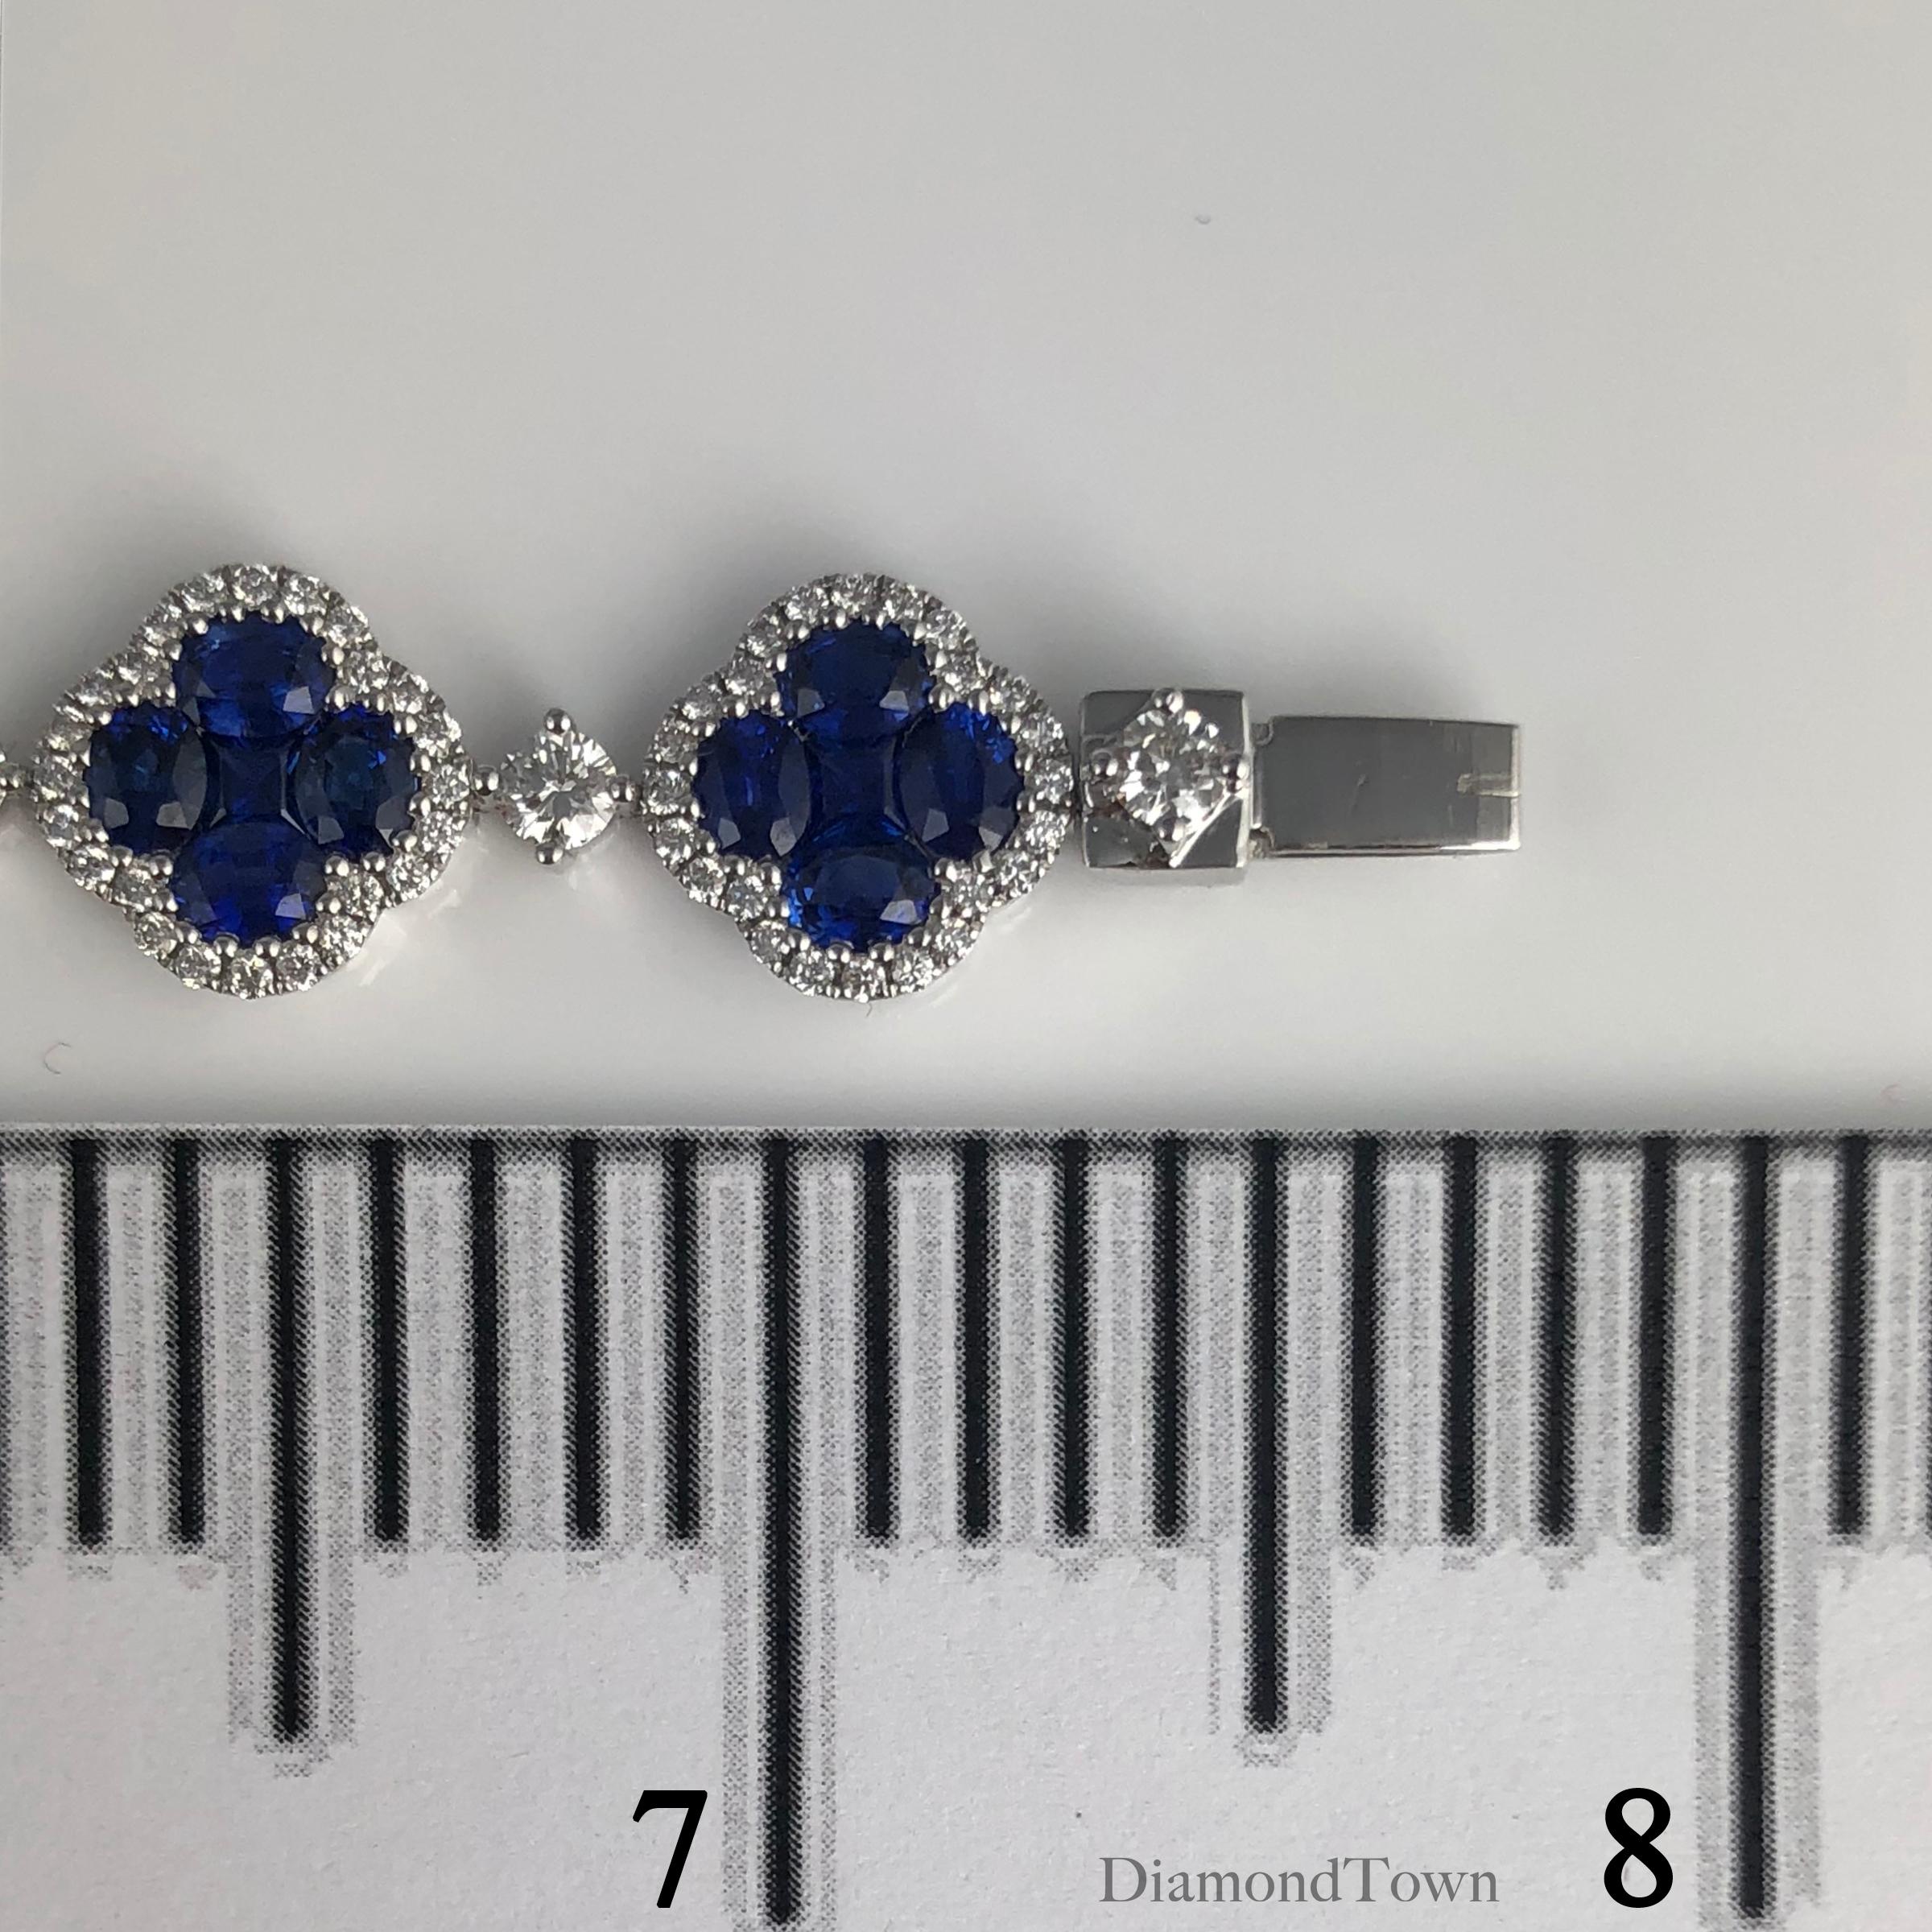 Contemporary Diamond Town 11.1 Carat Vivid Blue Sapphire and Diamond Bracelet